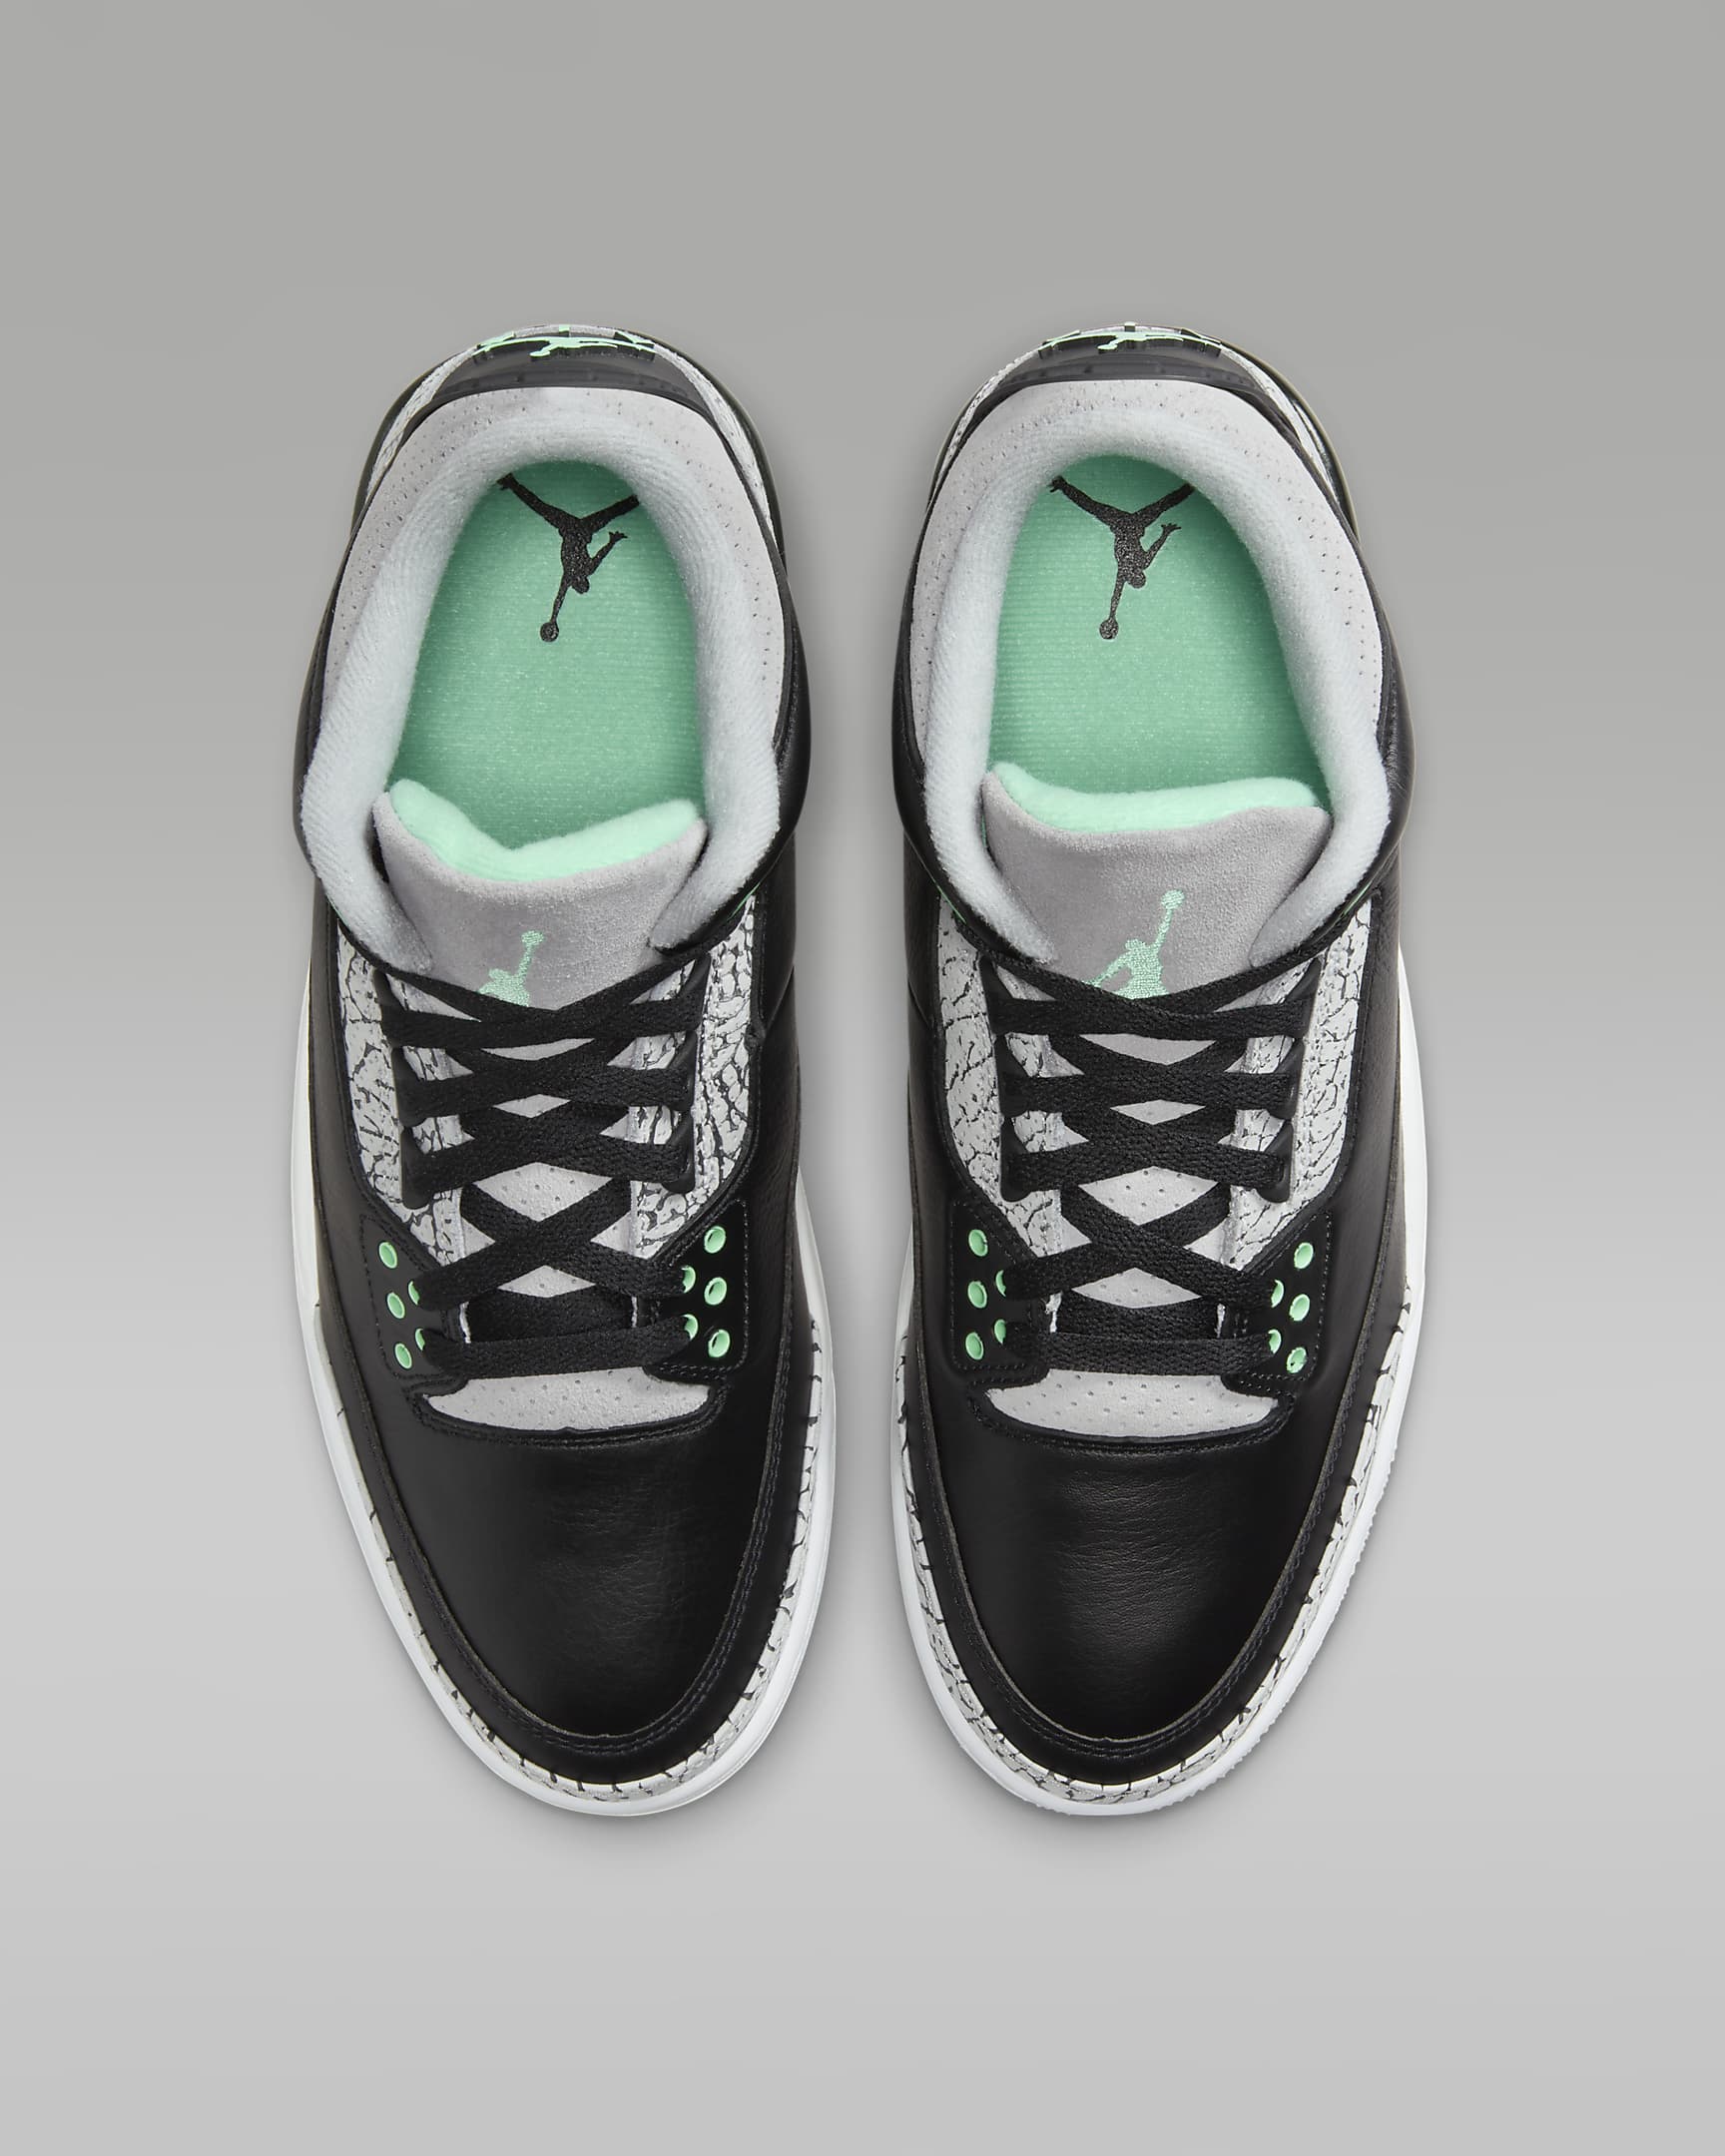 Nike Air Jordan 3 Retro Green Glow Men’s Shoe Review: Sneakerhead’s Dream!